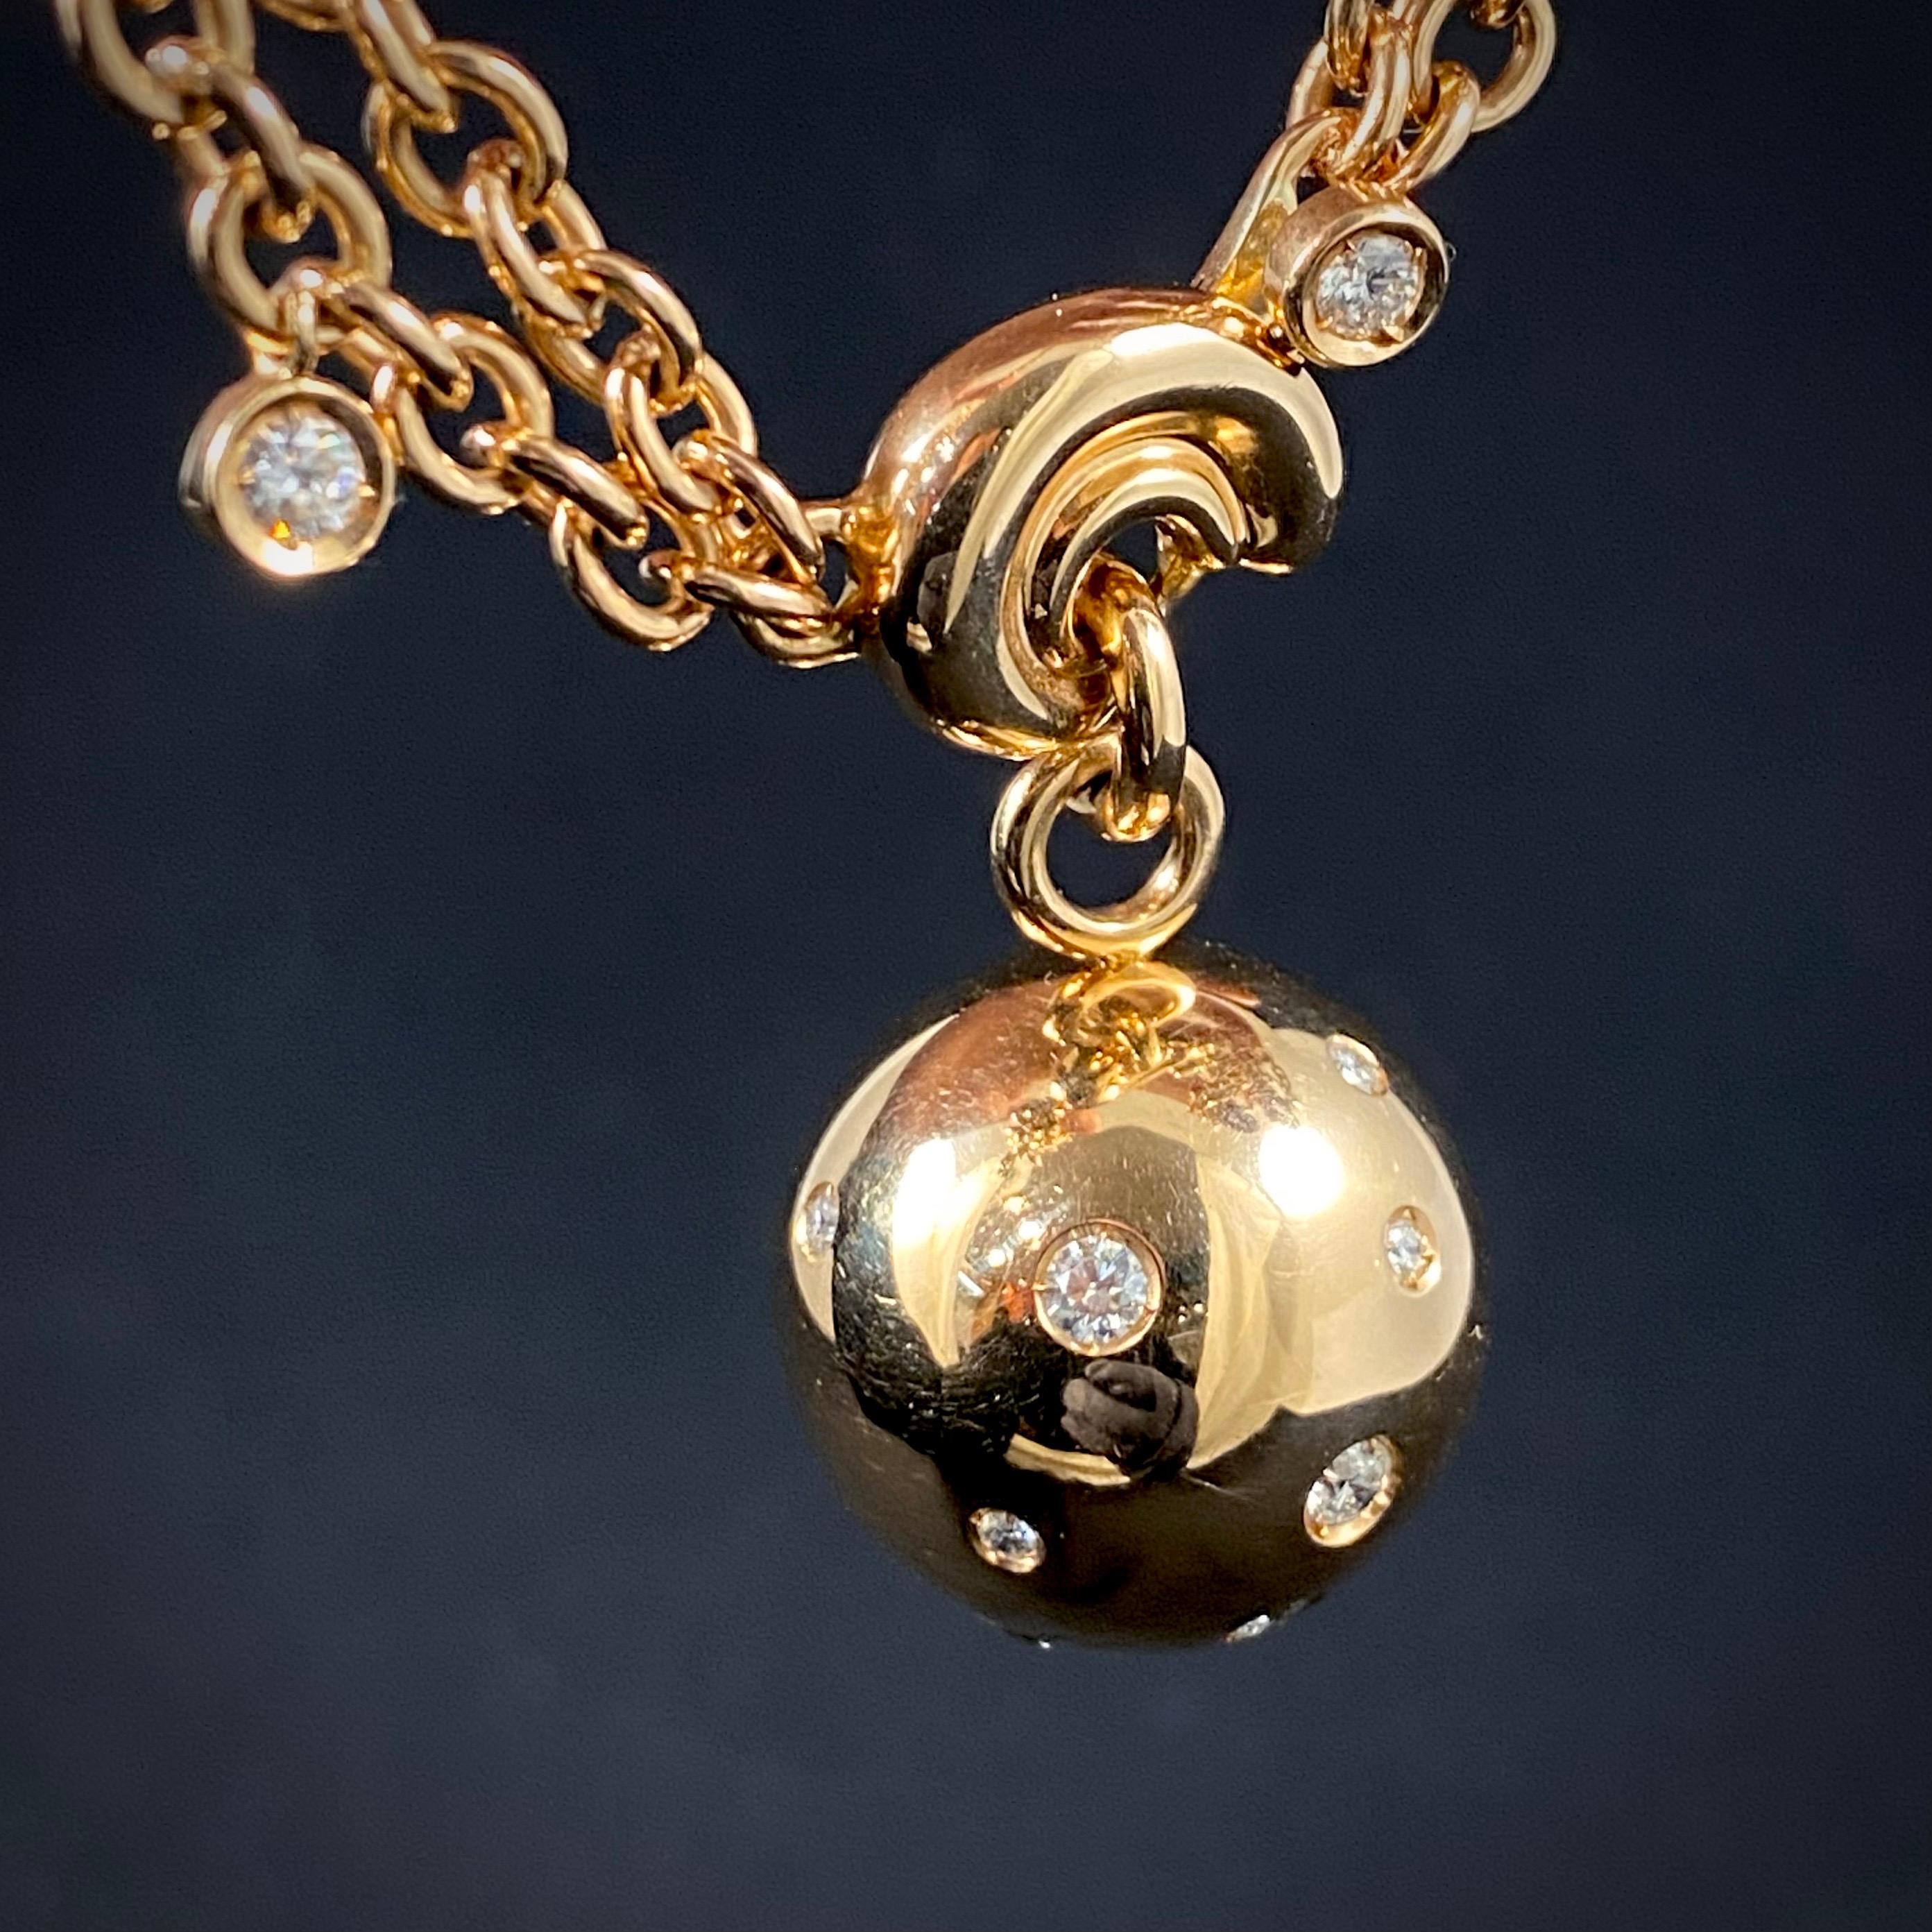 de GRISOGONO Round Brilliant Cut Diamond Boule Charm Pendant Necklace Rose Gold 6